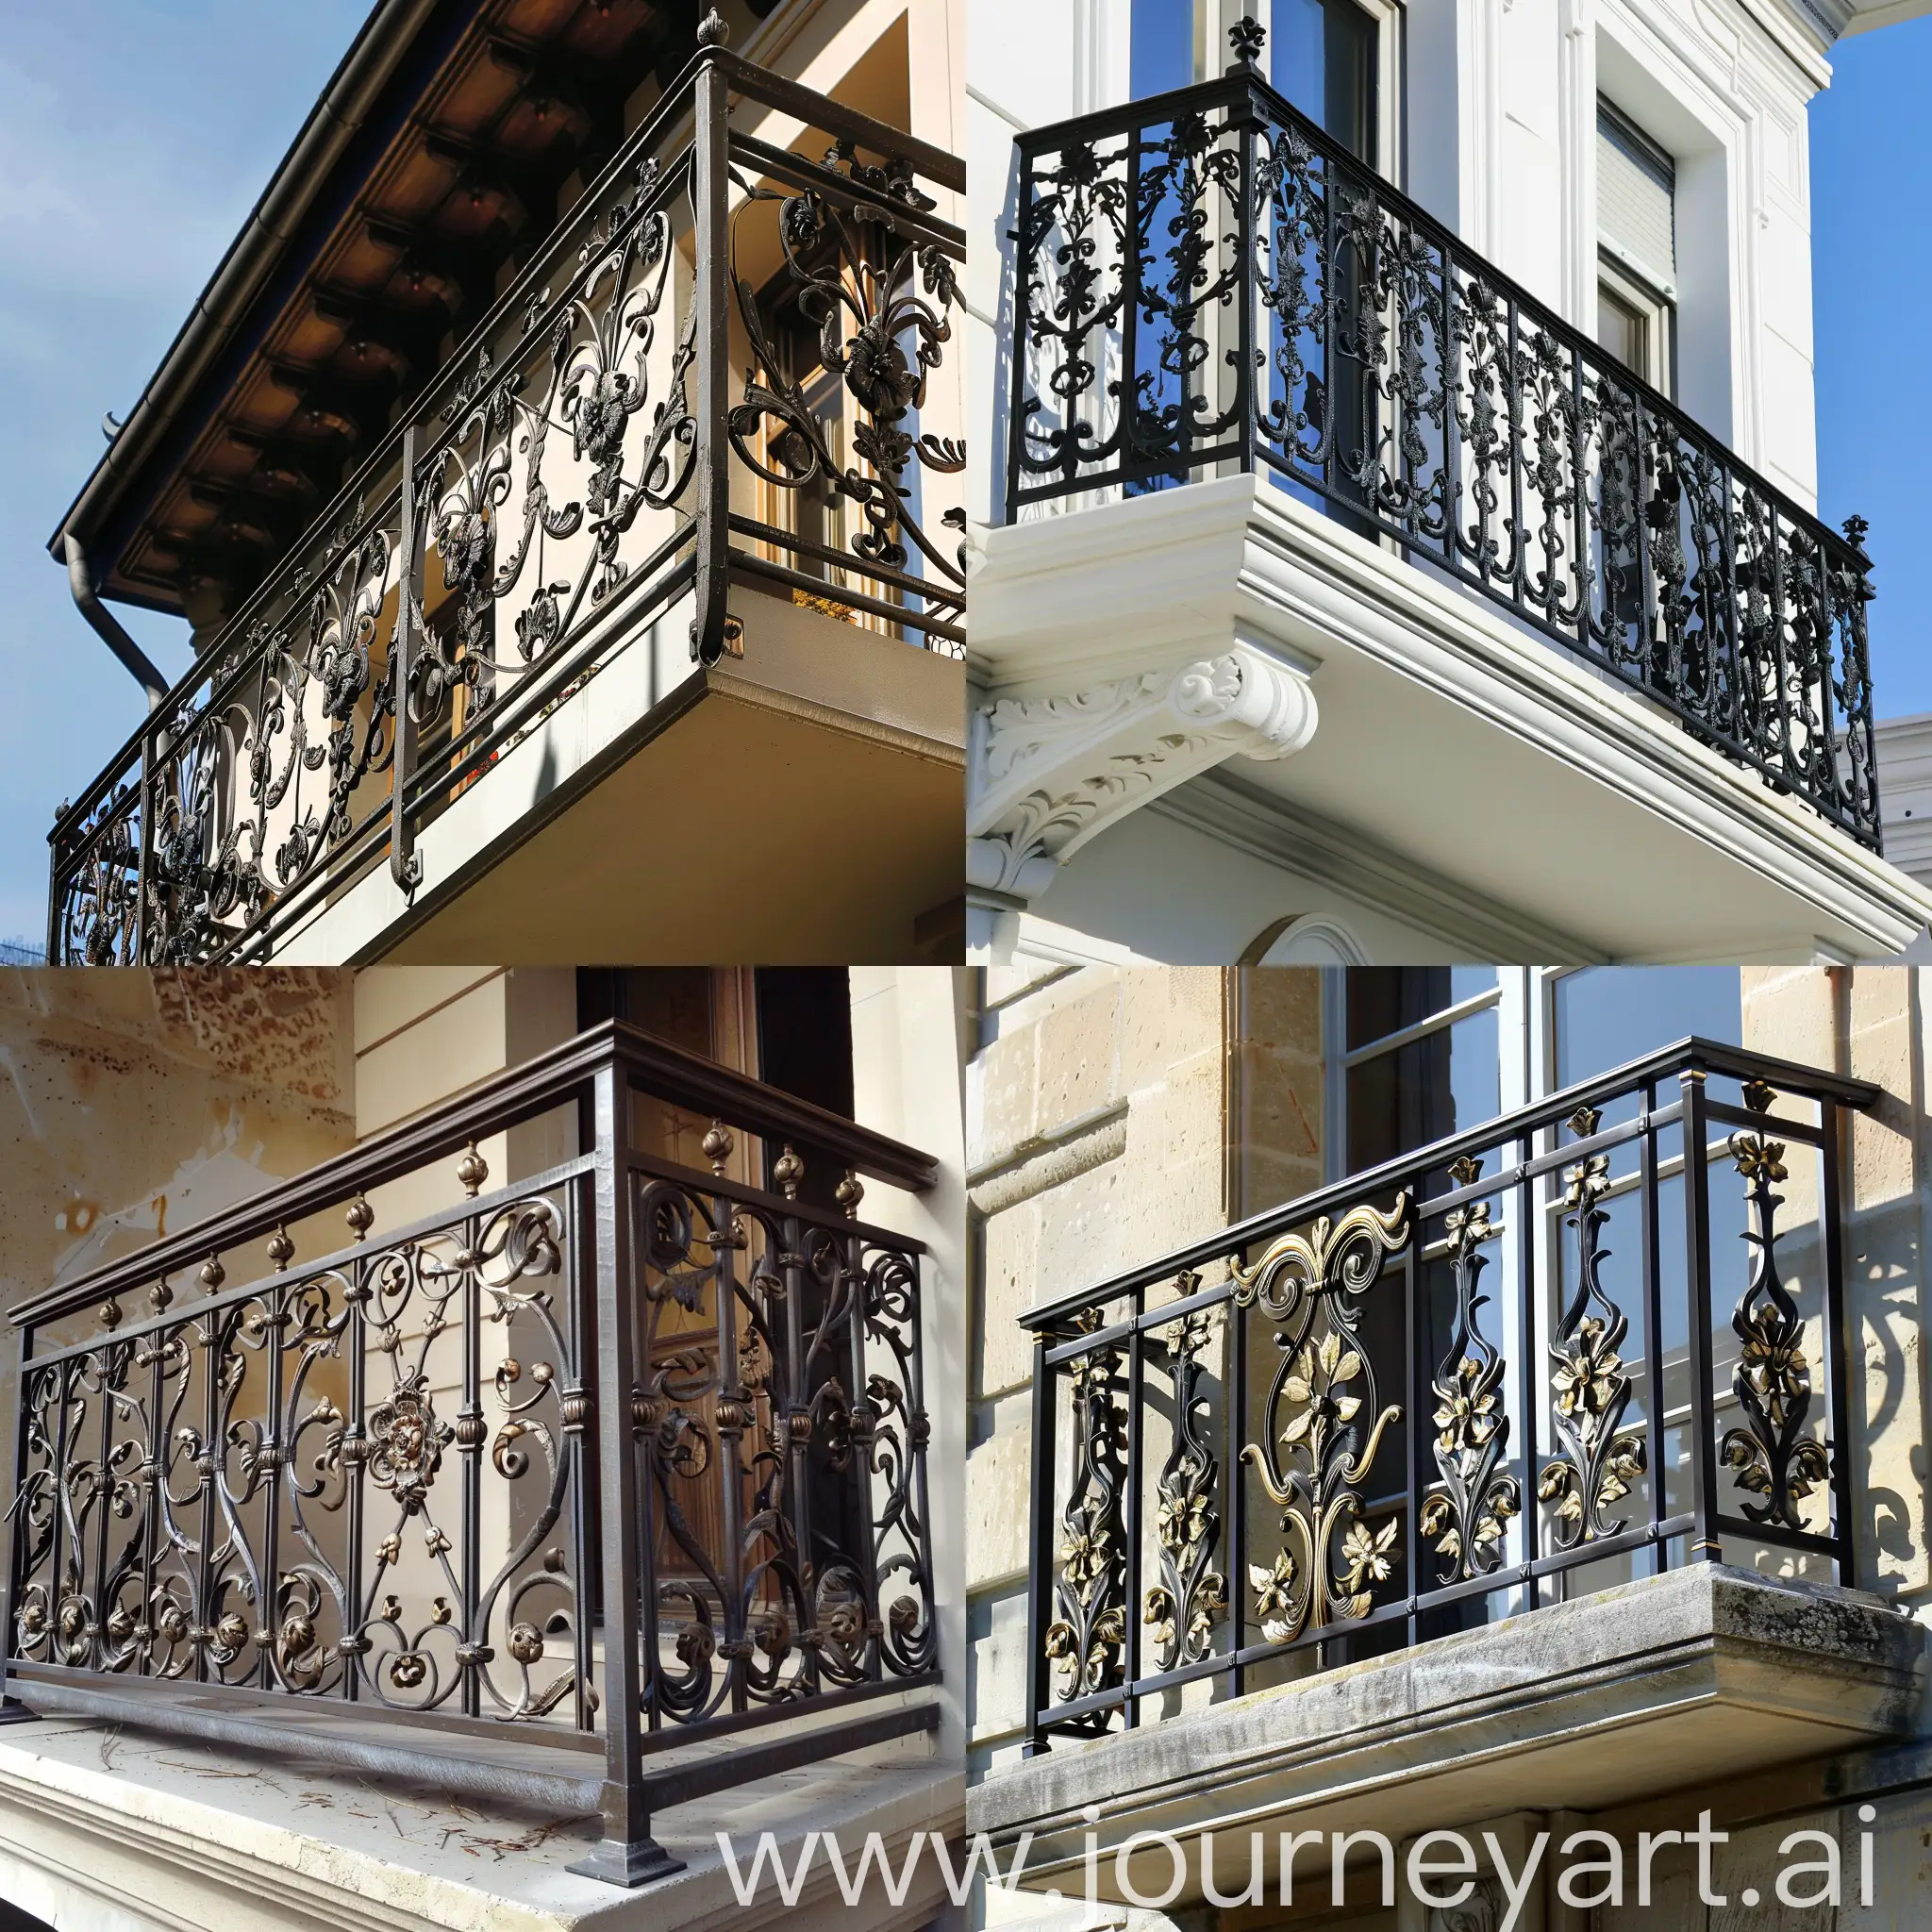 Кованные перила балкона в викторианском стиле